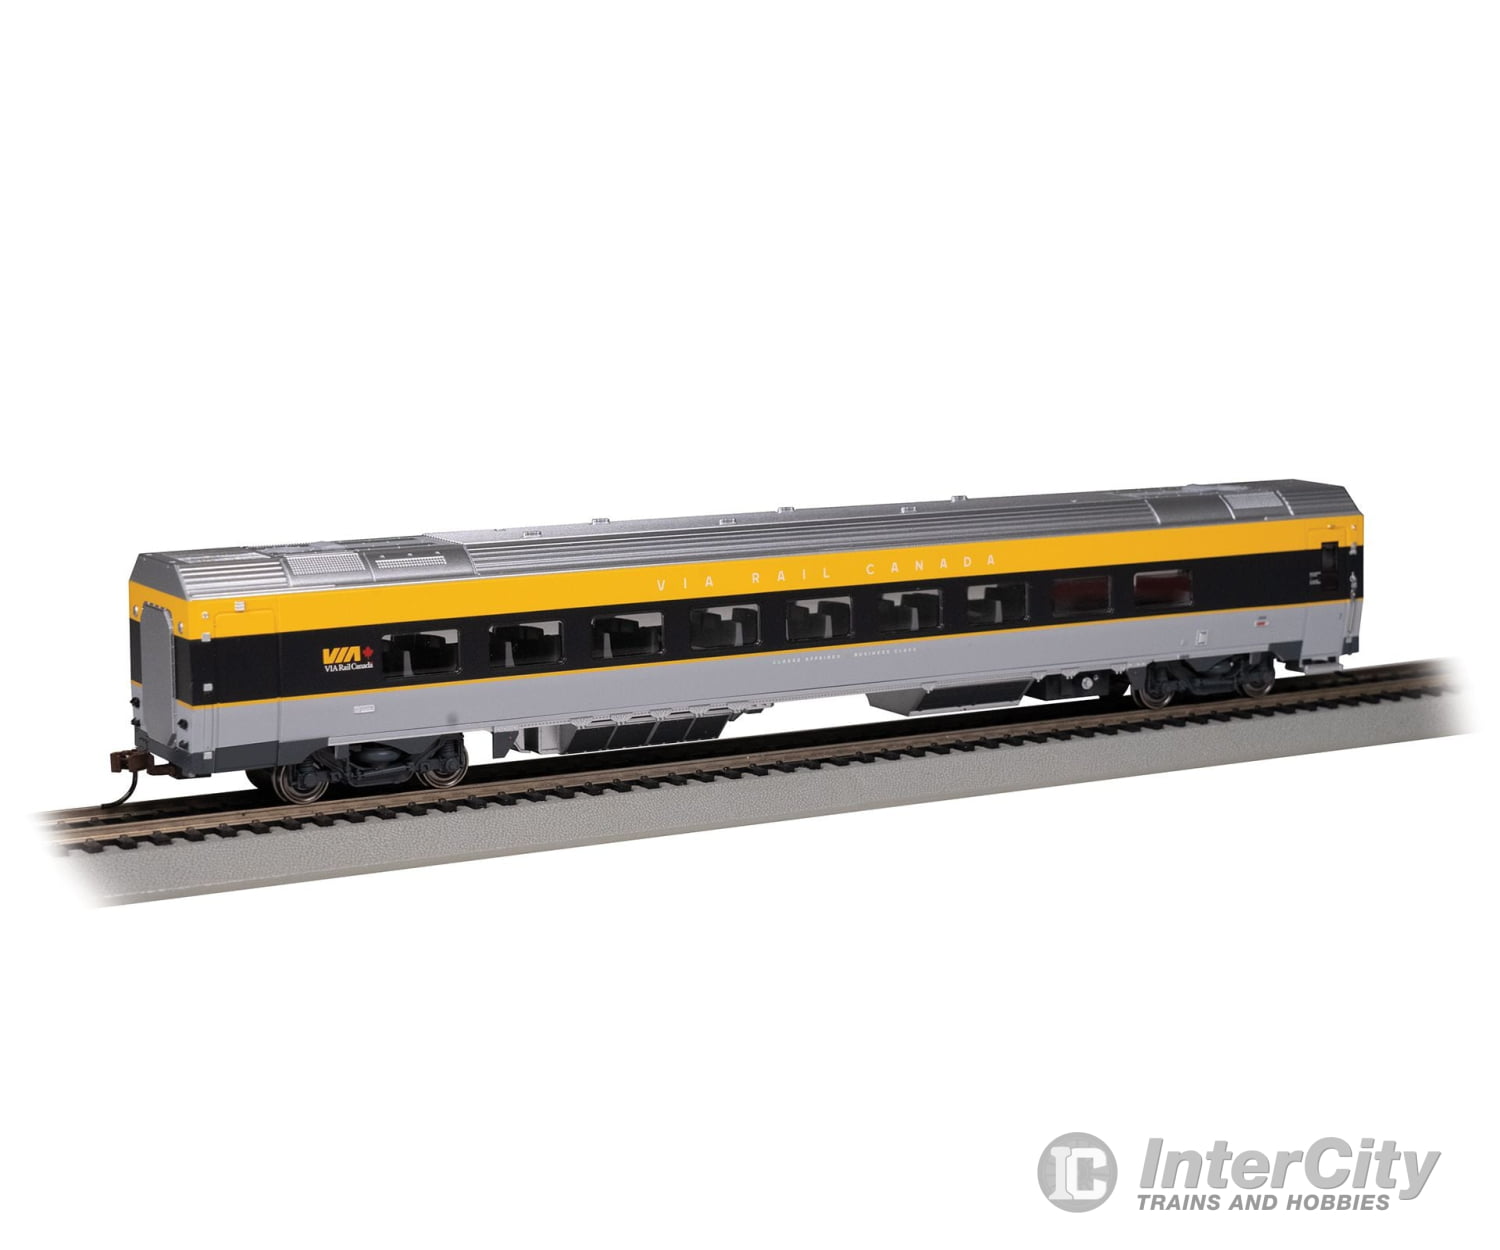 Bachmann 74507 Siemens Venture Coach - Via Version Ready To Run - - Rail Canada #2600 (Gray Black